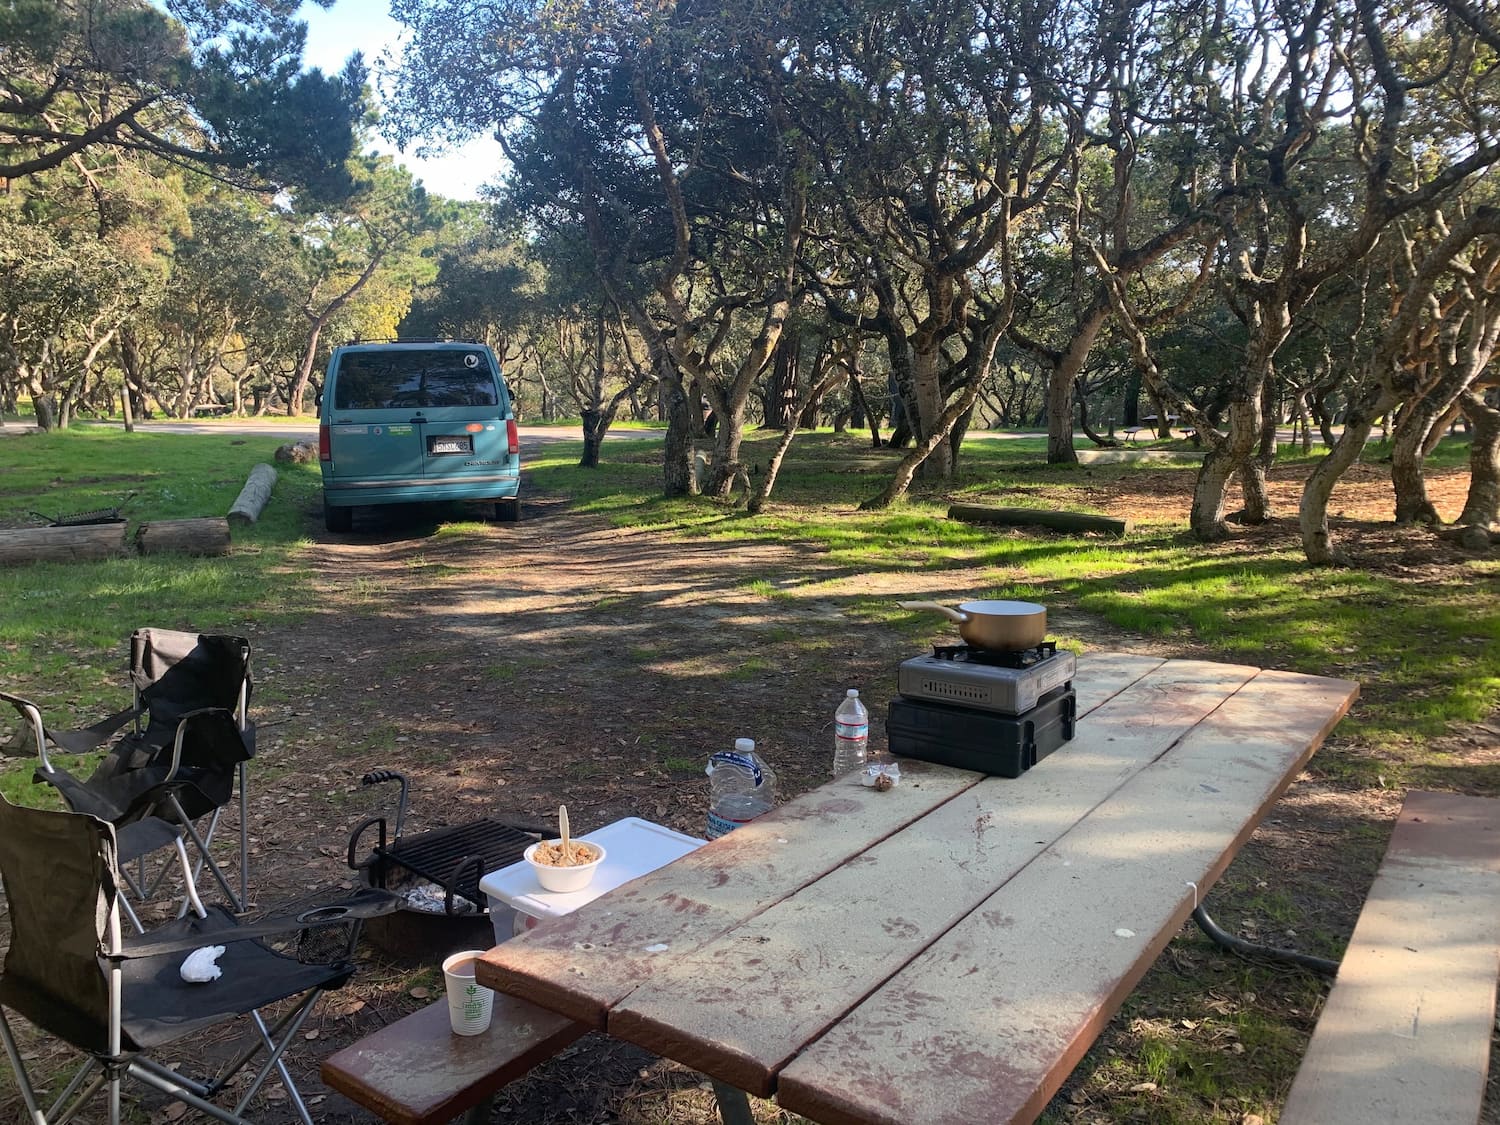 van and camp set up at picnic table